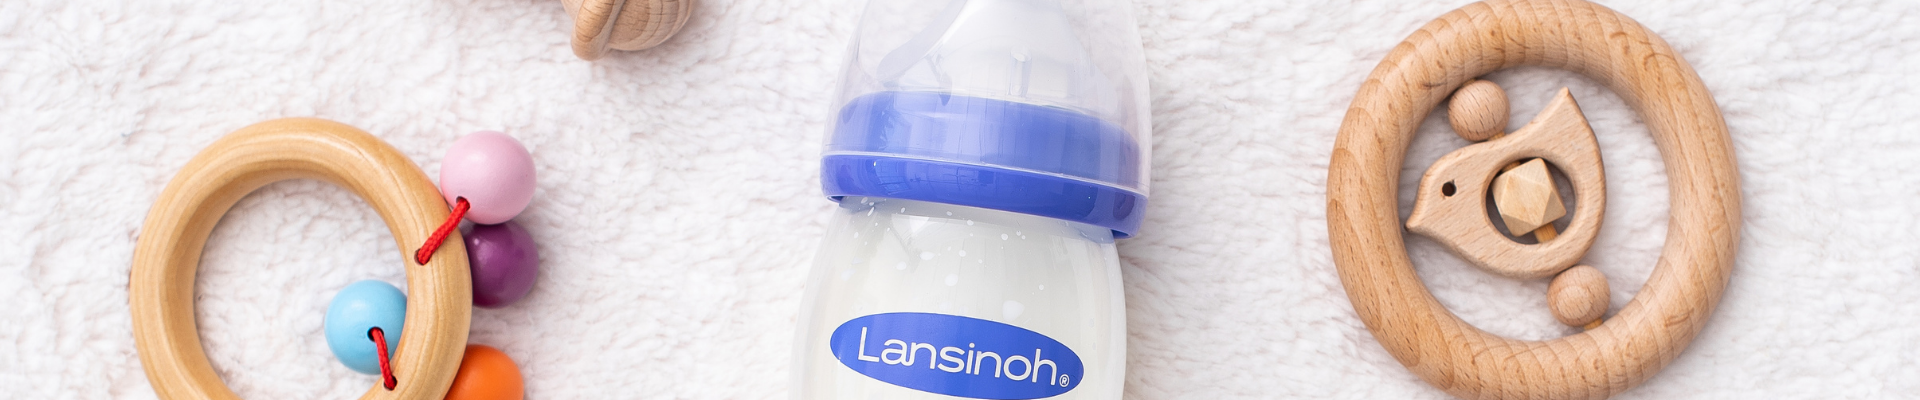 Lansinoh - Biberons en Verre avec tétine Natural Wave® spécial allaitement